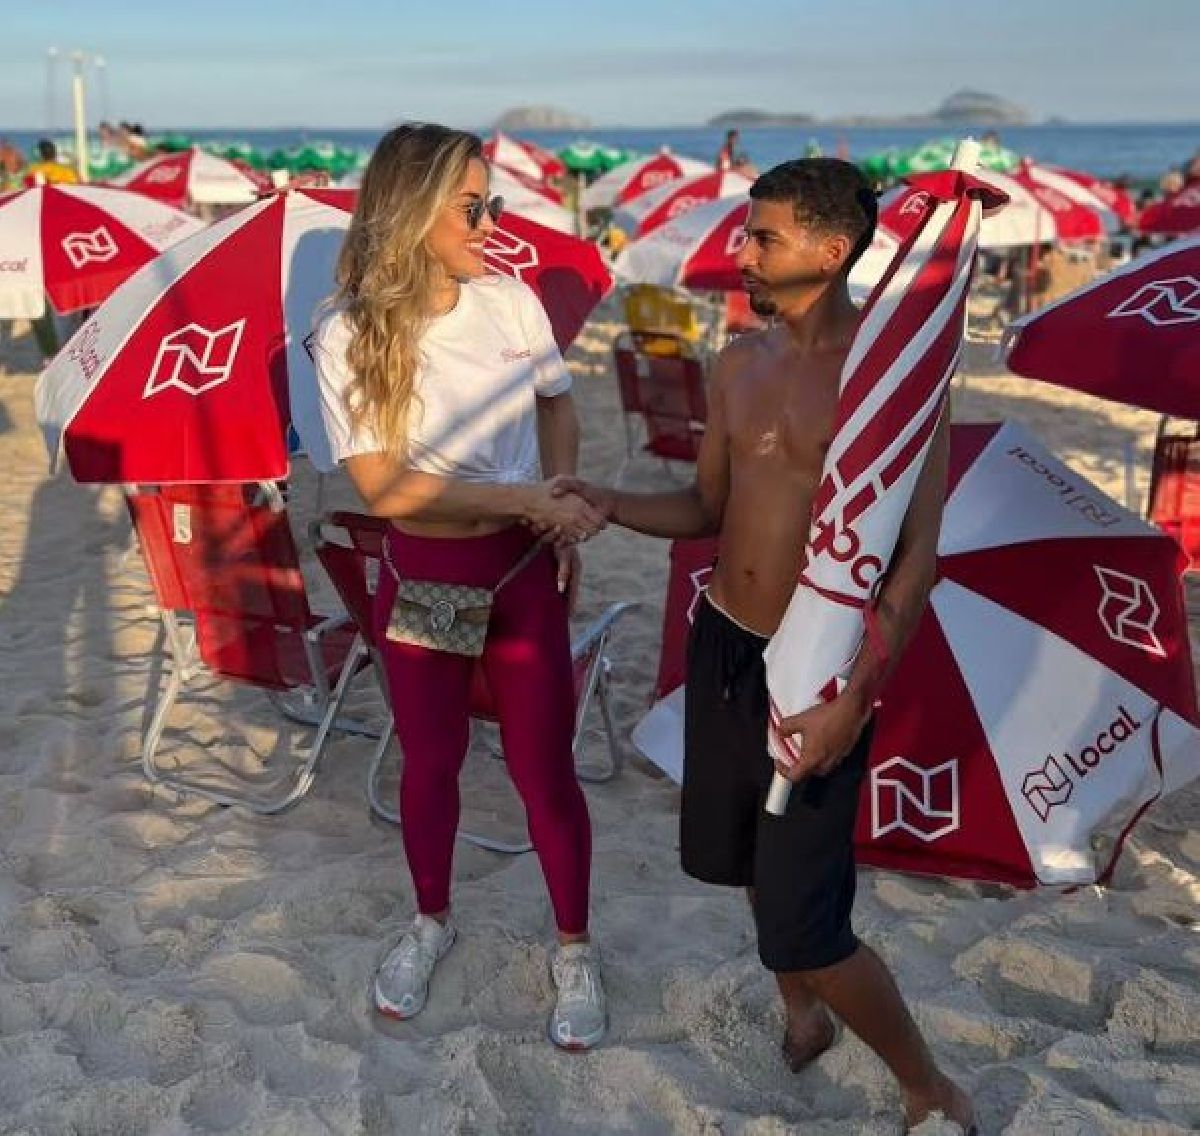 Rio de cara nova: Local App distribui novos guarda-sóis nas praias cariocas neste feriadão prolongado